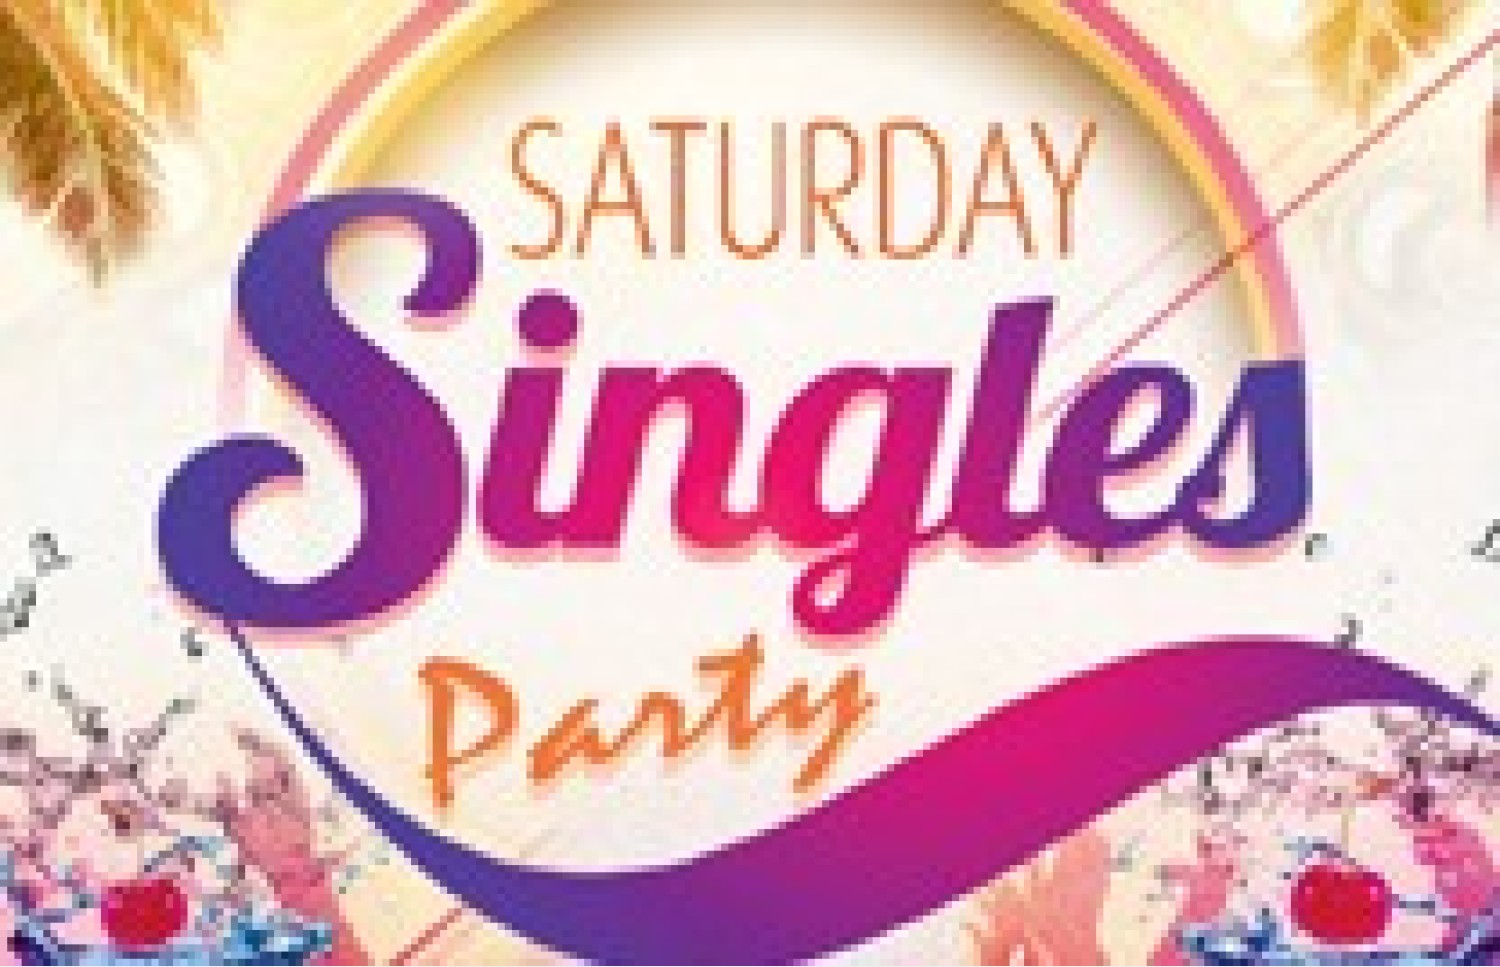 Party nieuws: Saturday Singles Party, voor iedereen toegankelijk